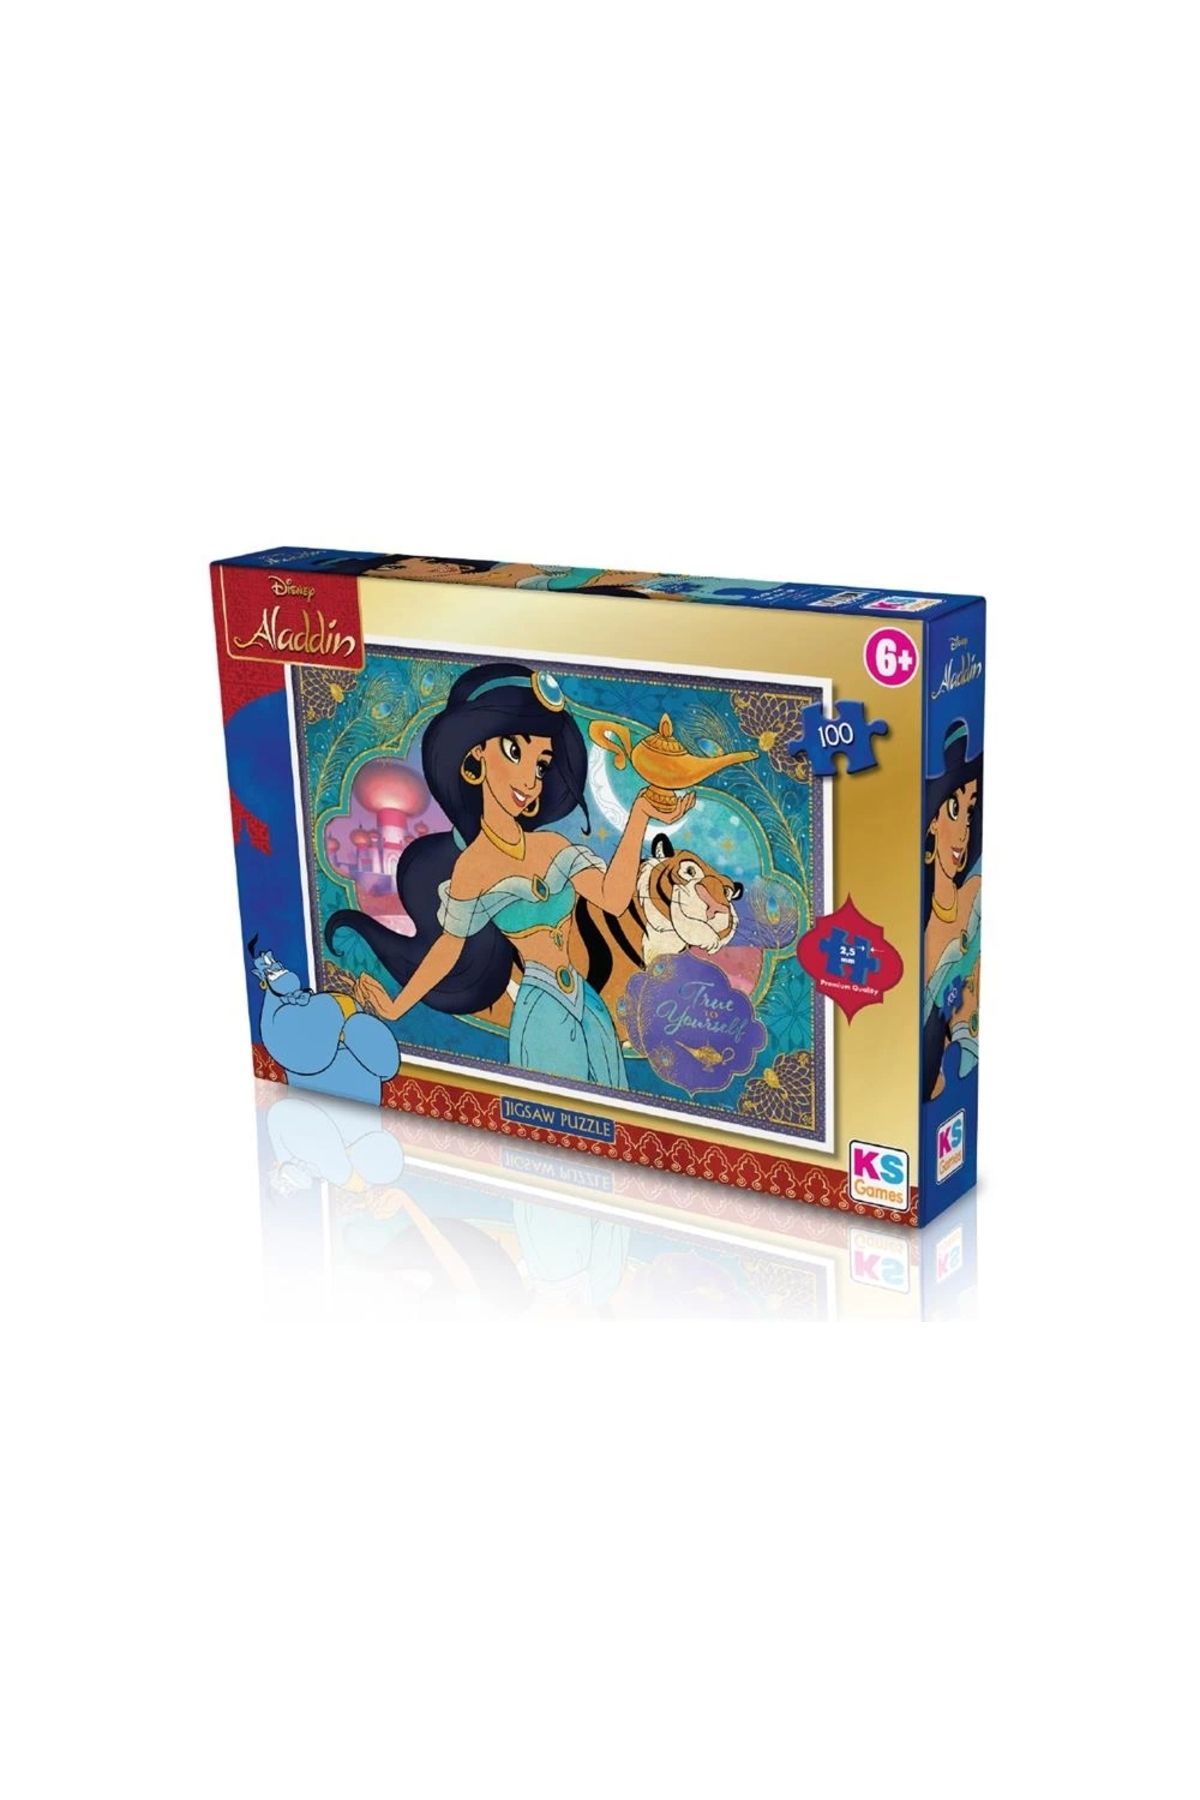 Genel Markalar Ald 714 Aladdin Puzzle 100 Prç. -ks